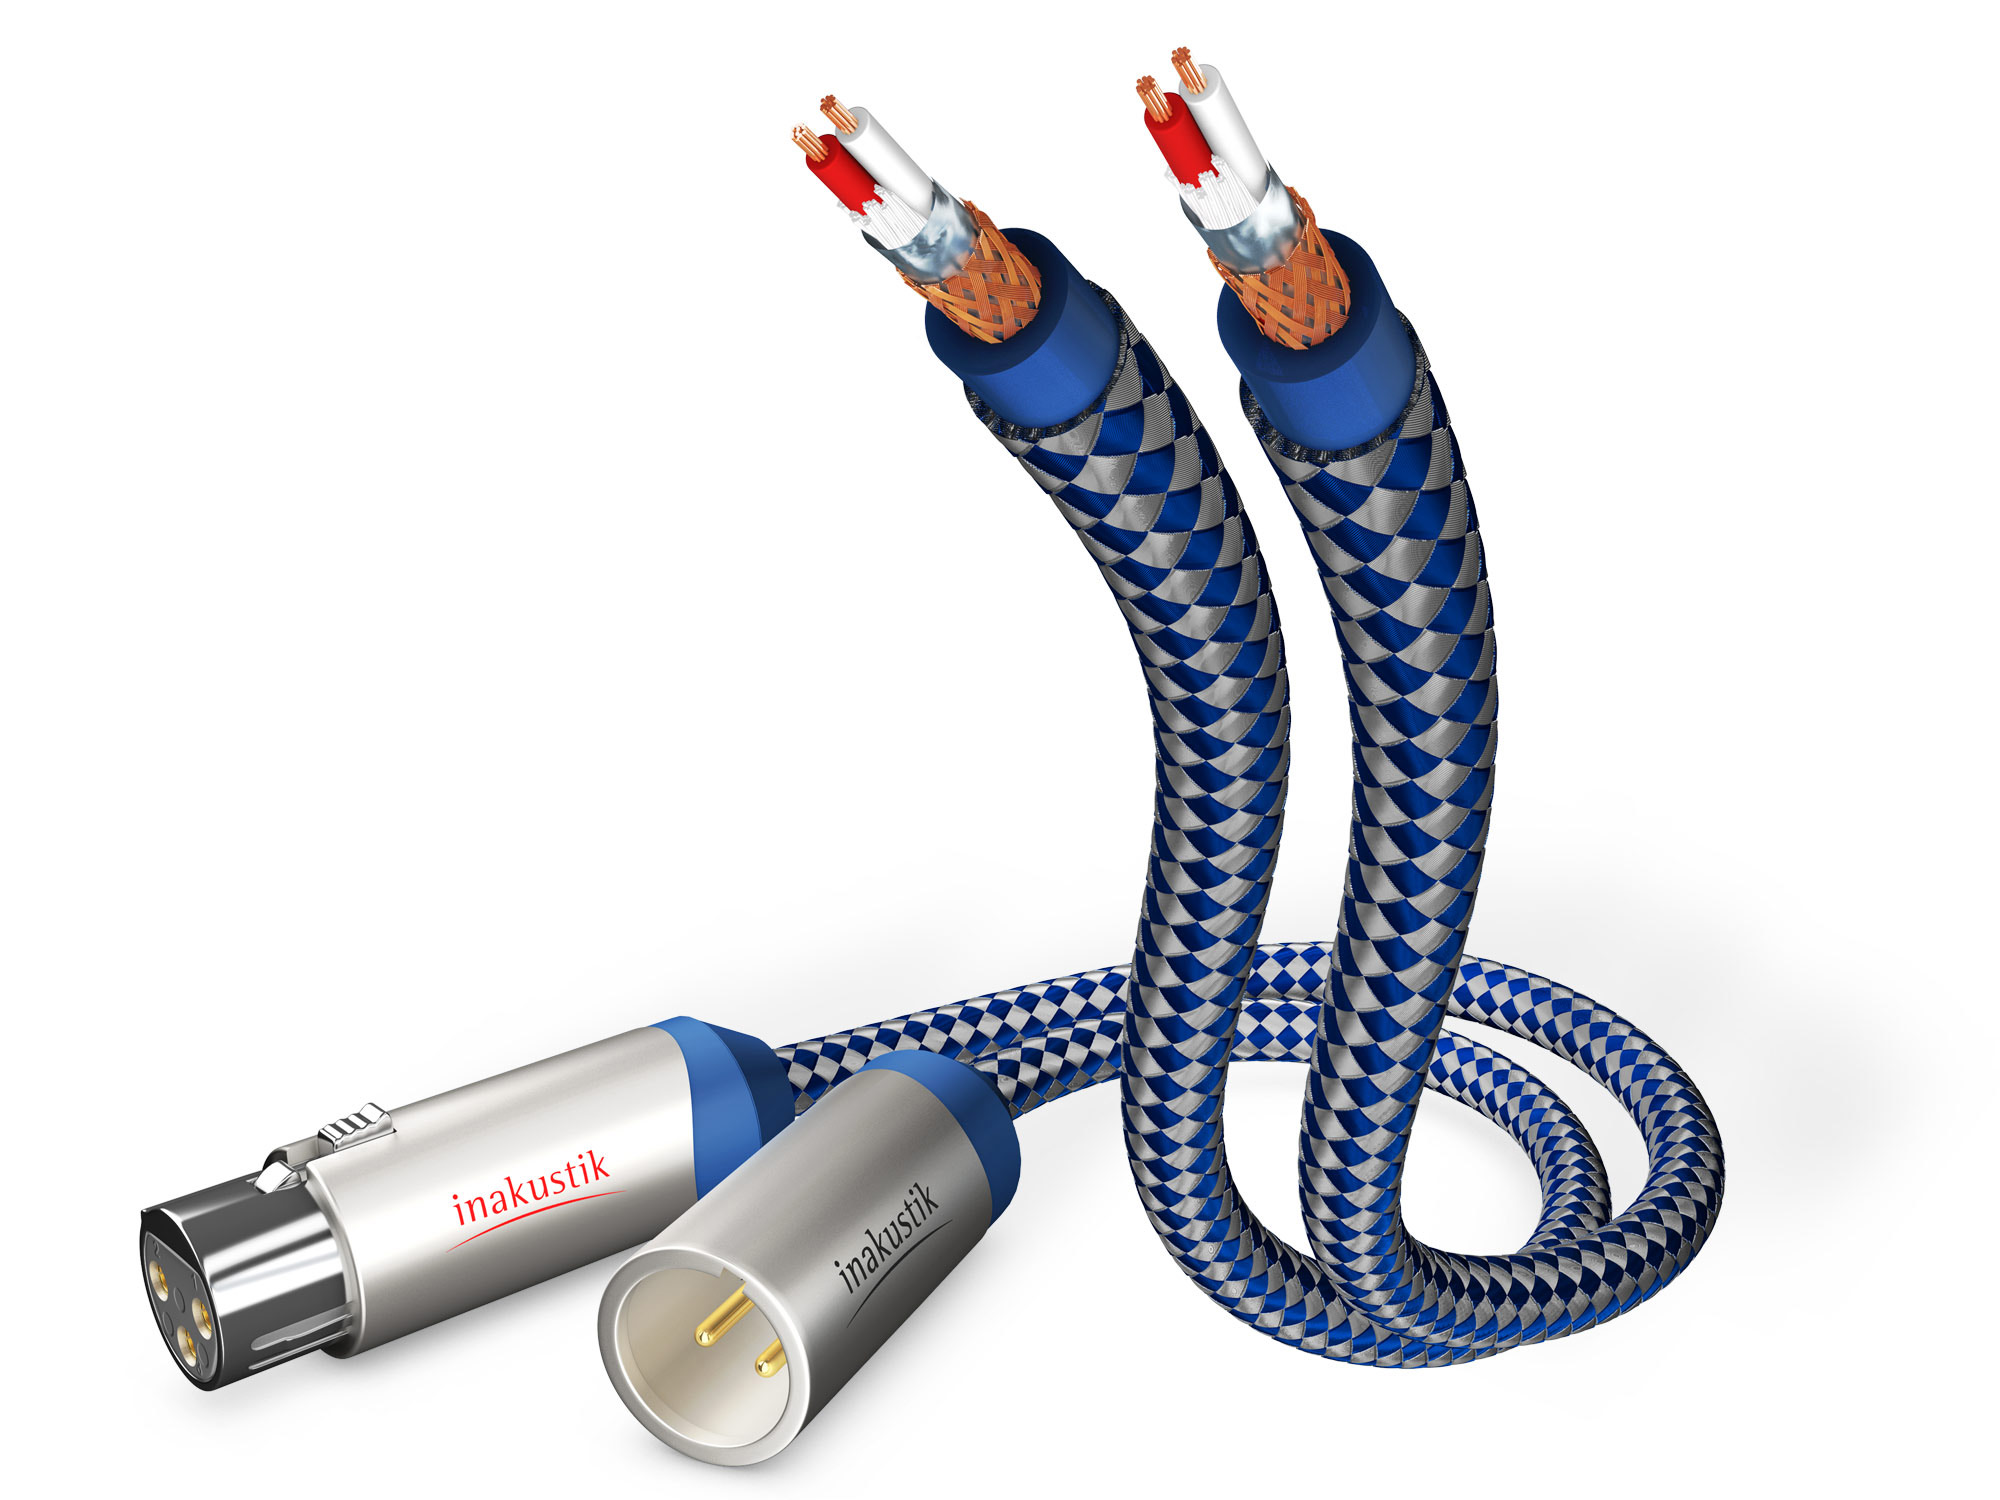 INAKUSTIK Premium XLR 3m audio cable